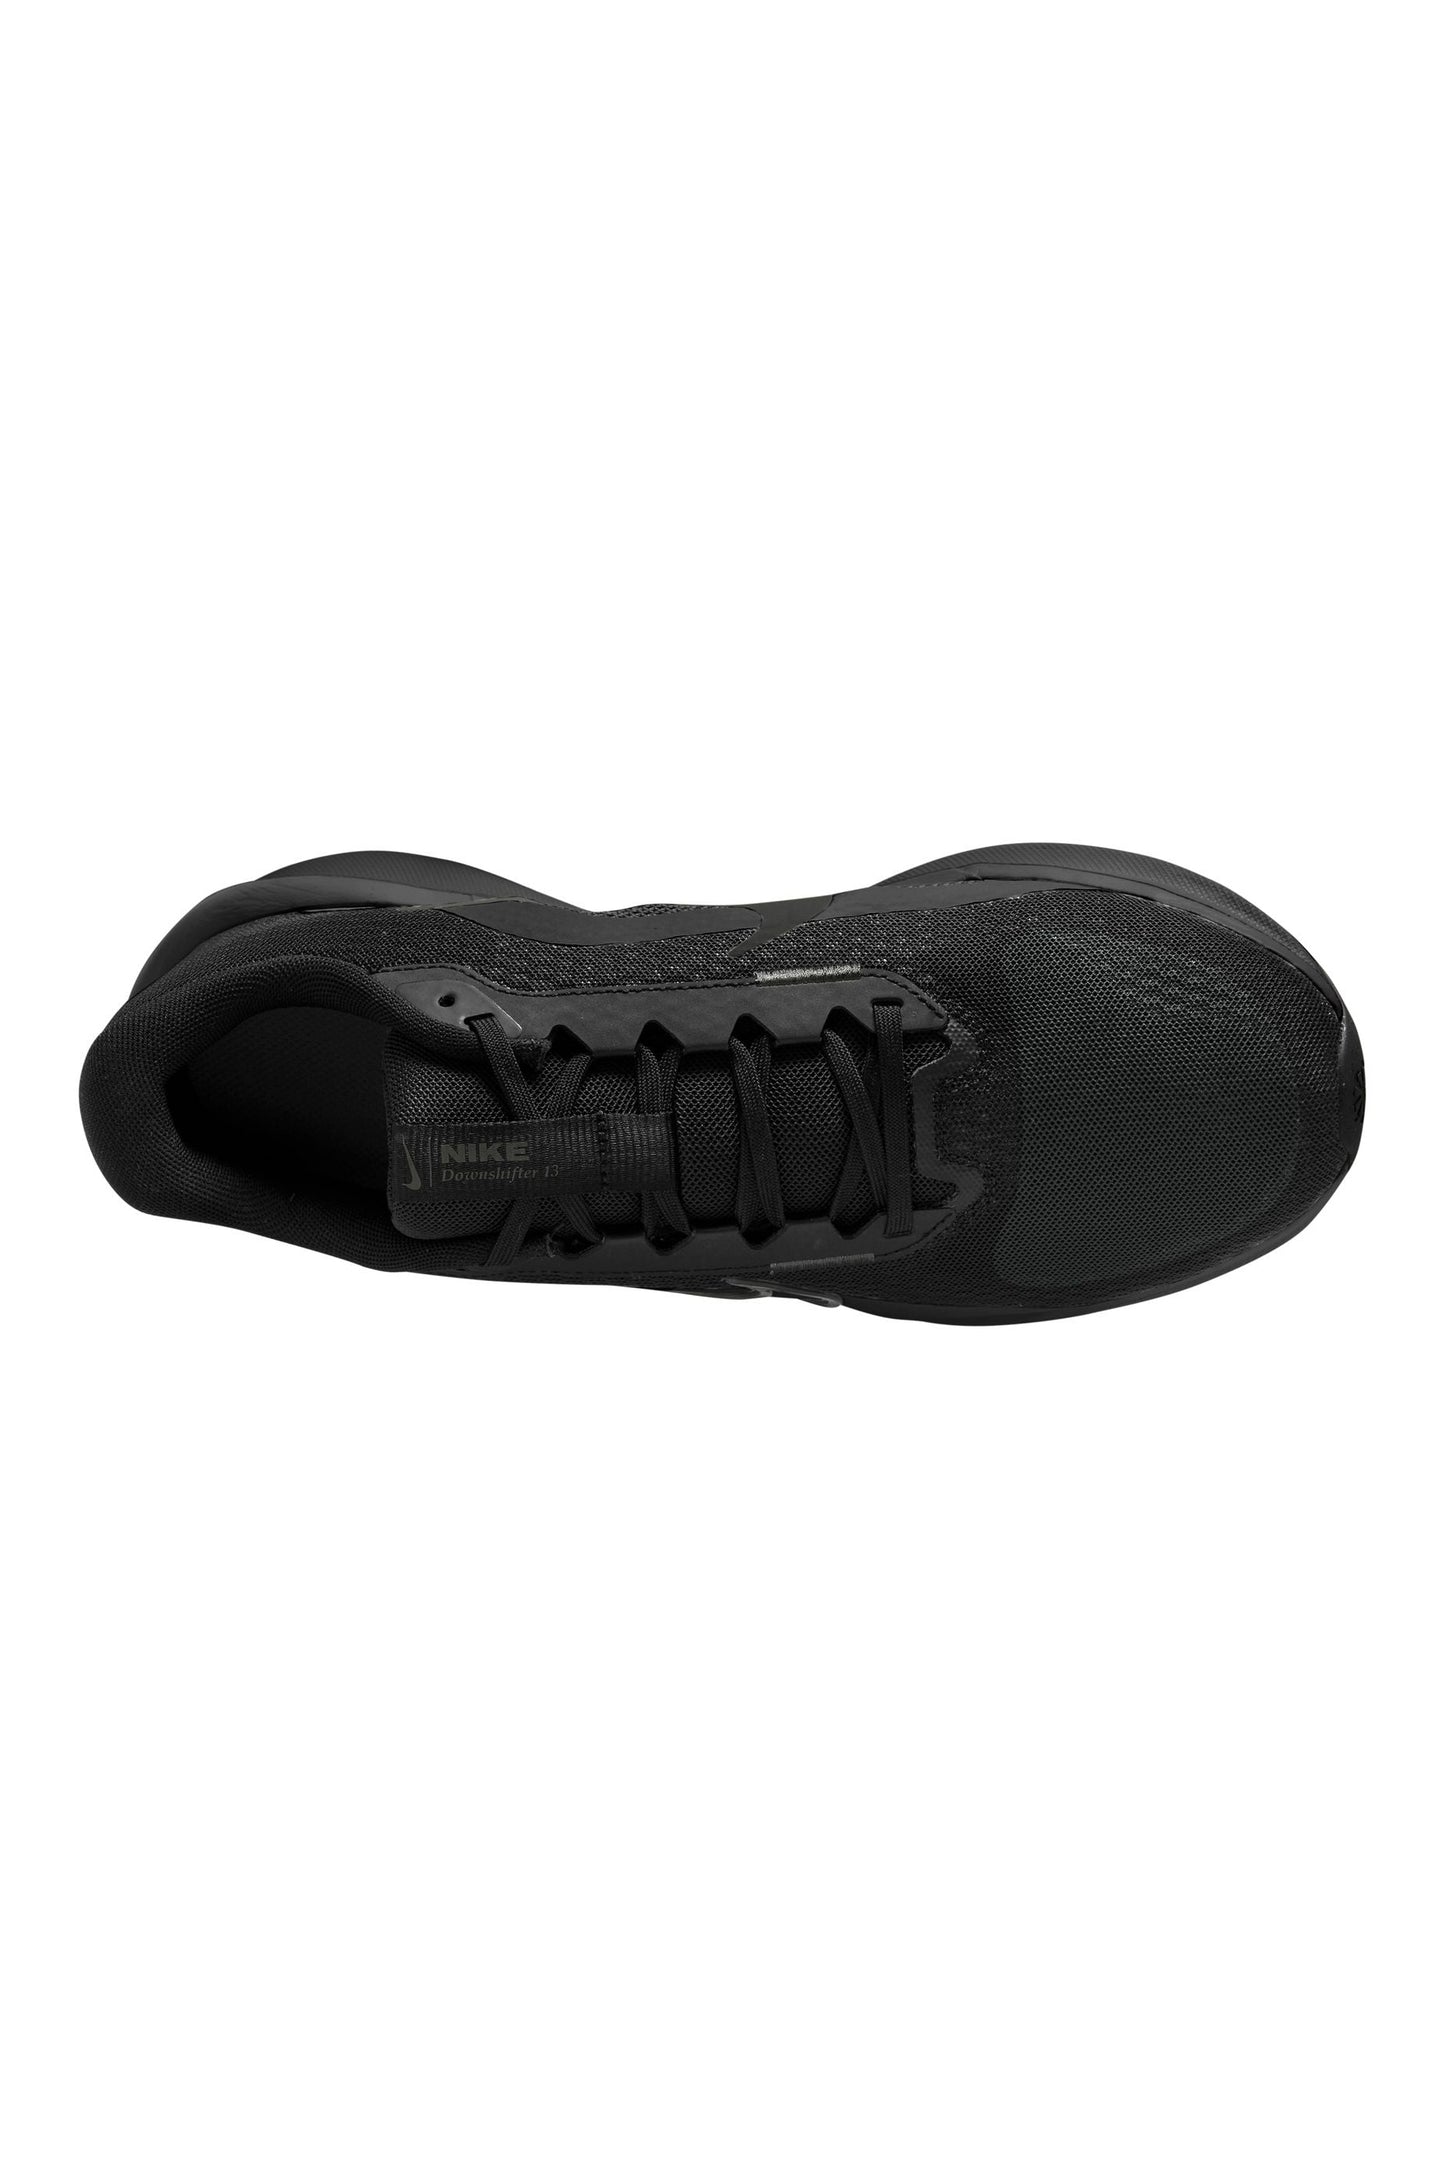 נעלי ספורט לגברים Downshifter 13 בצבע שחור